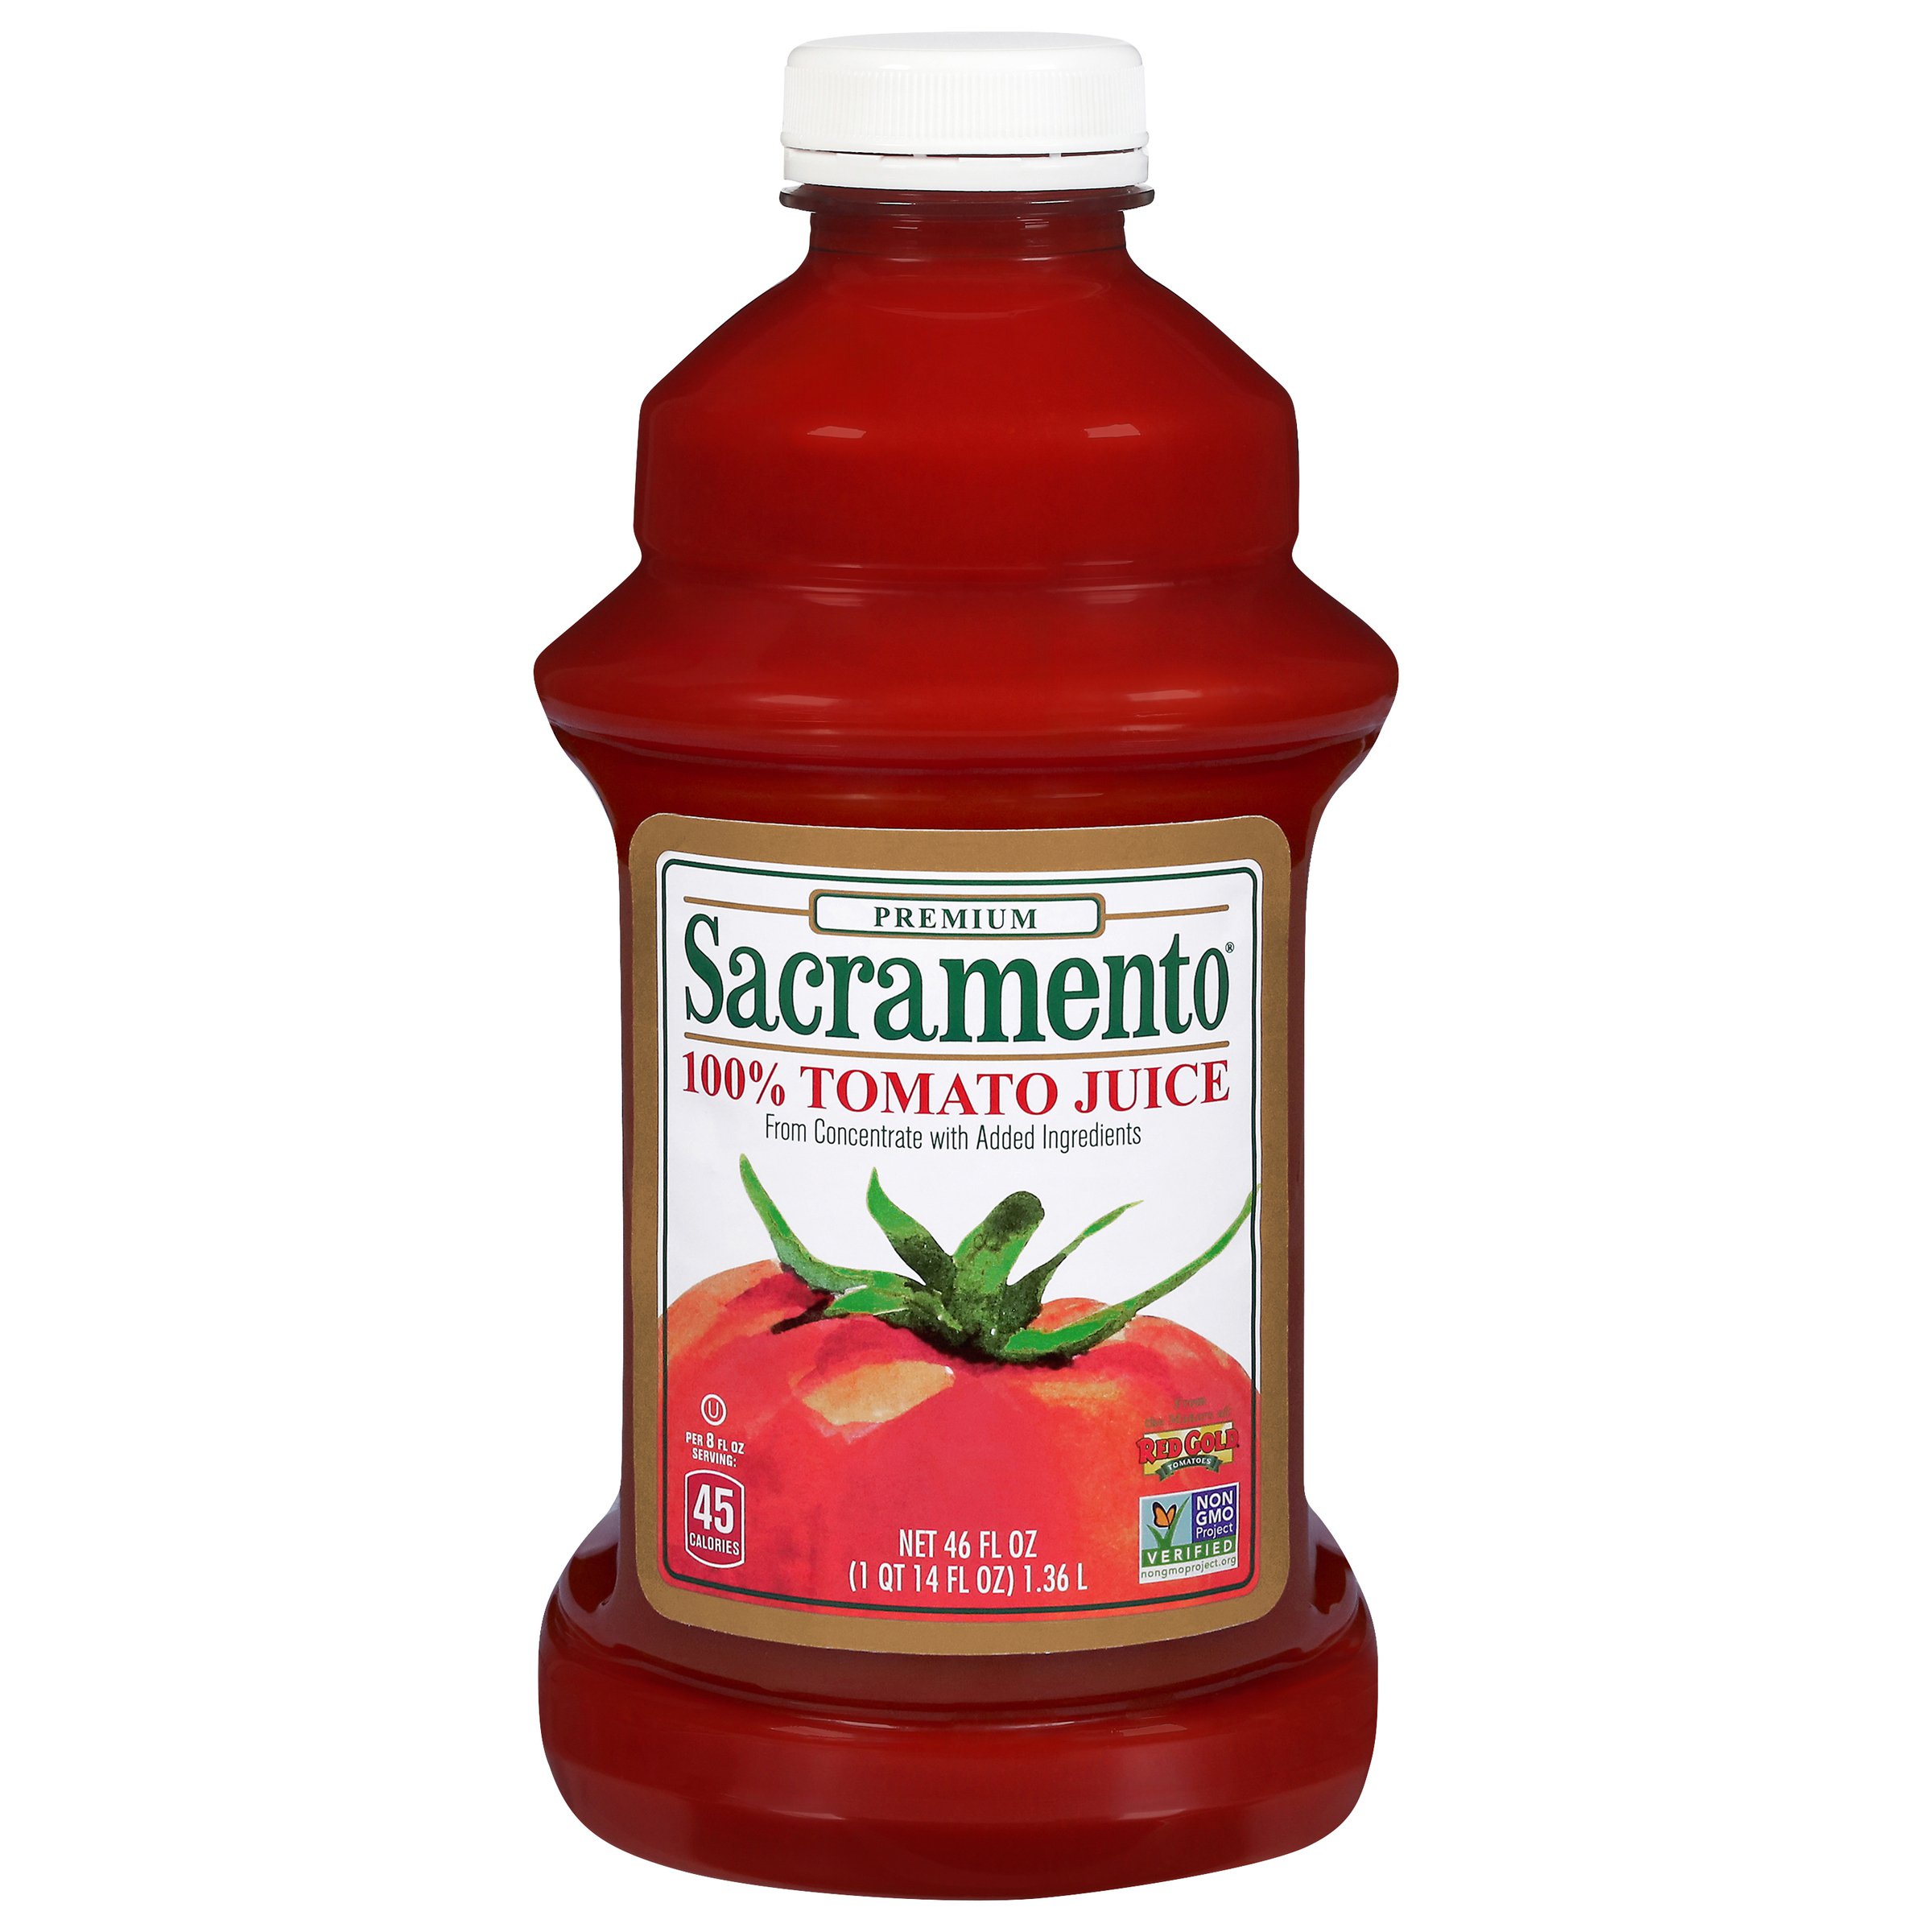 Image of Sacramento Tomato Juice Bottle 46 oz